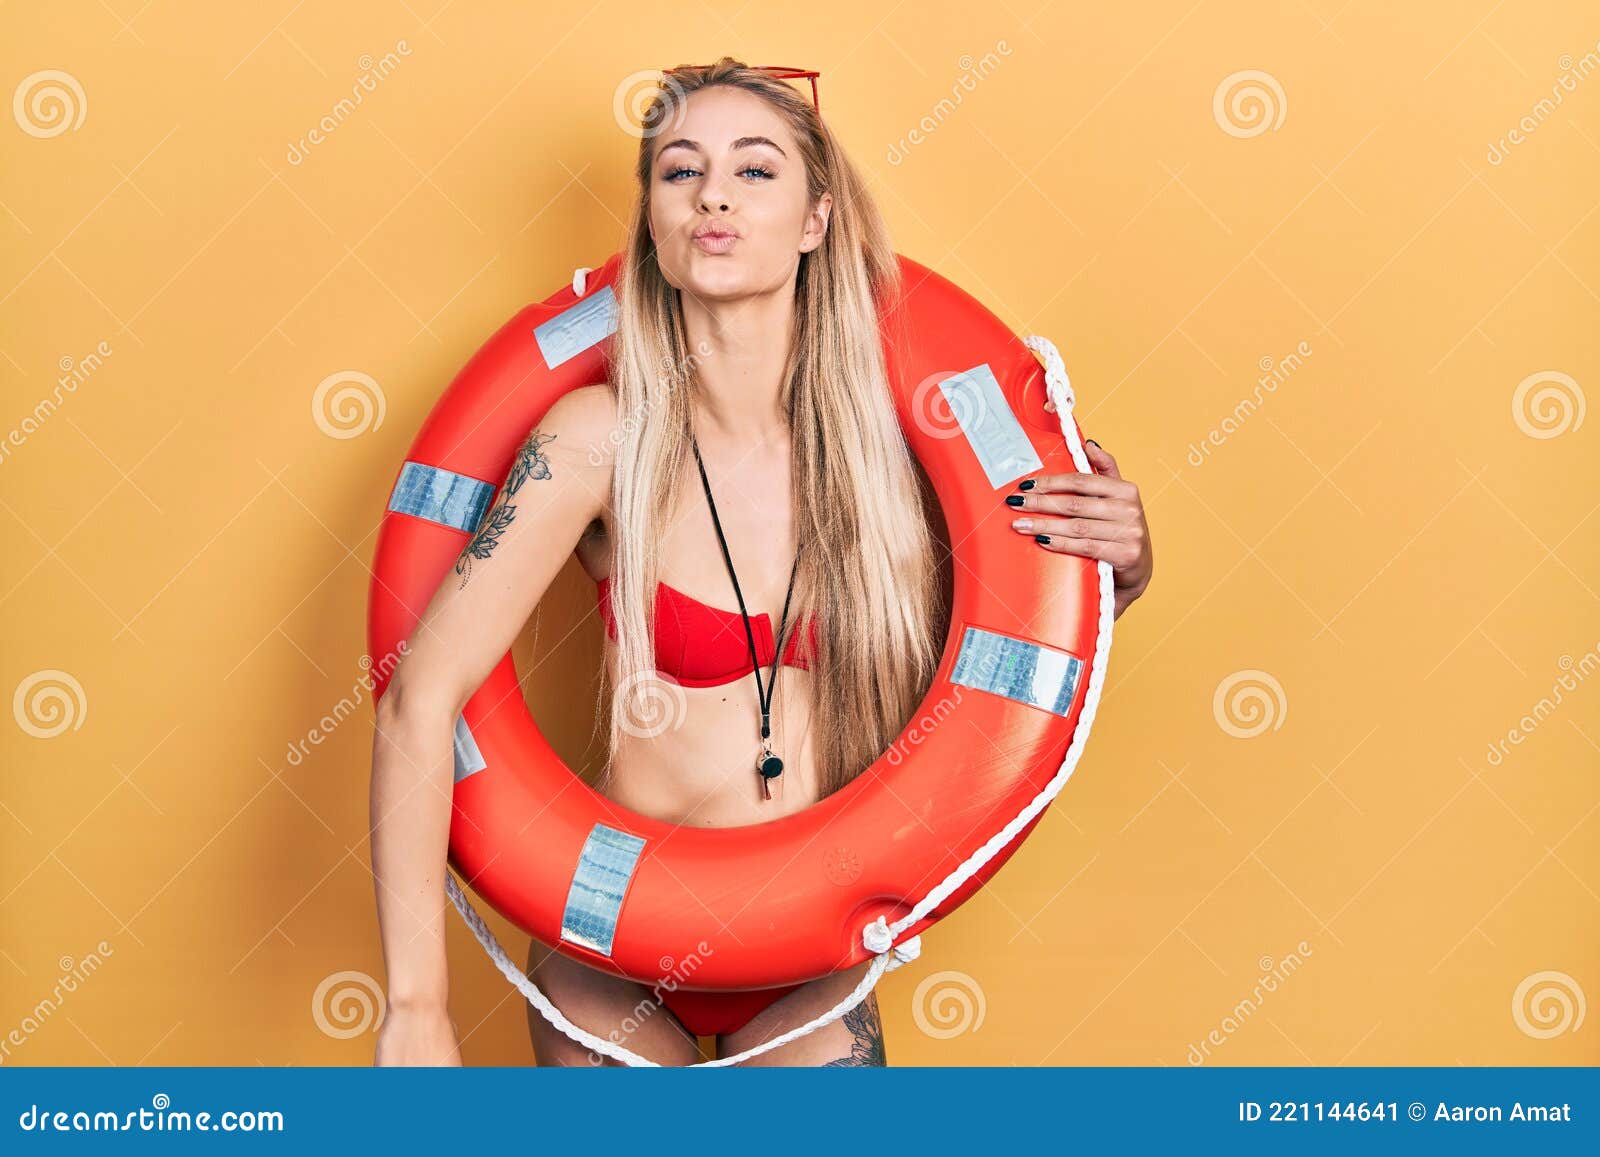 teen lifeguard selfie